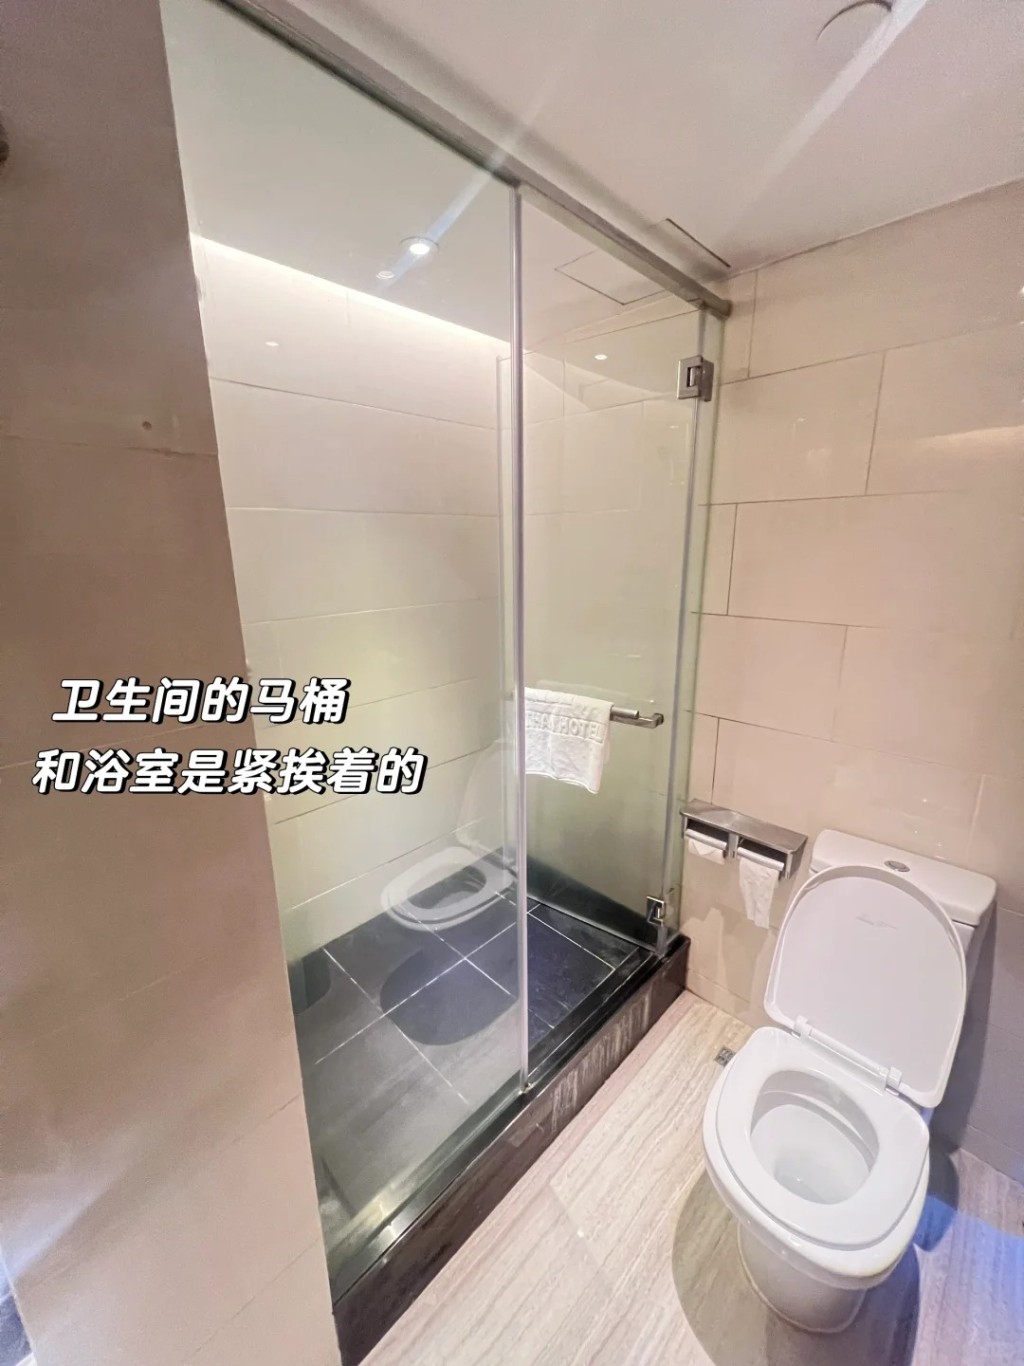 2.洗手間的馬桶正於淋浴間旁邊，而且浴室空間細小